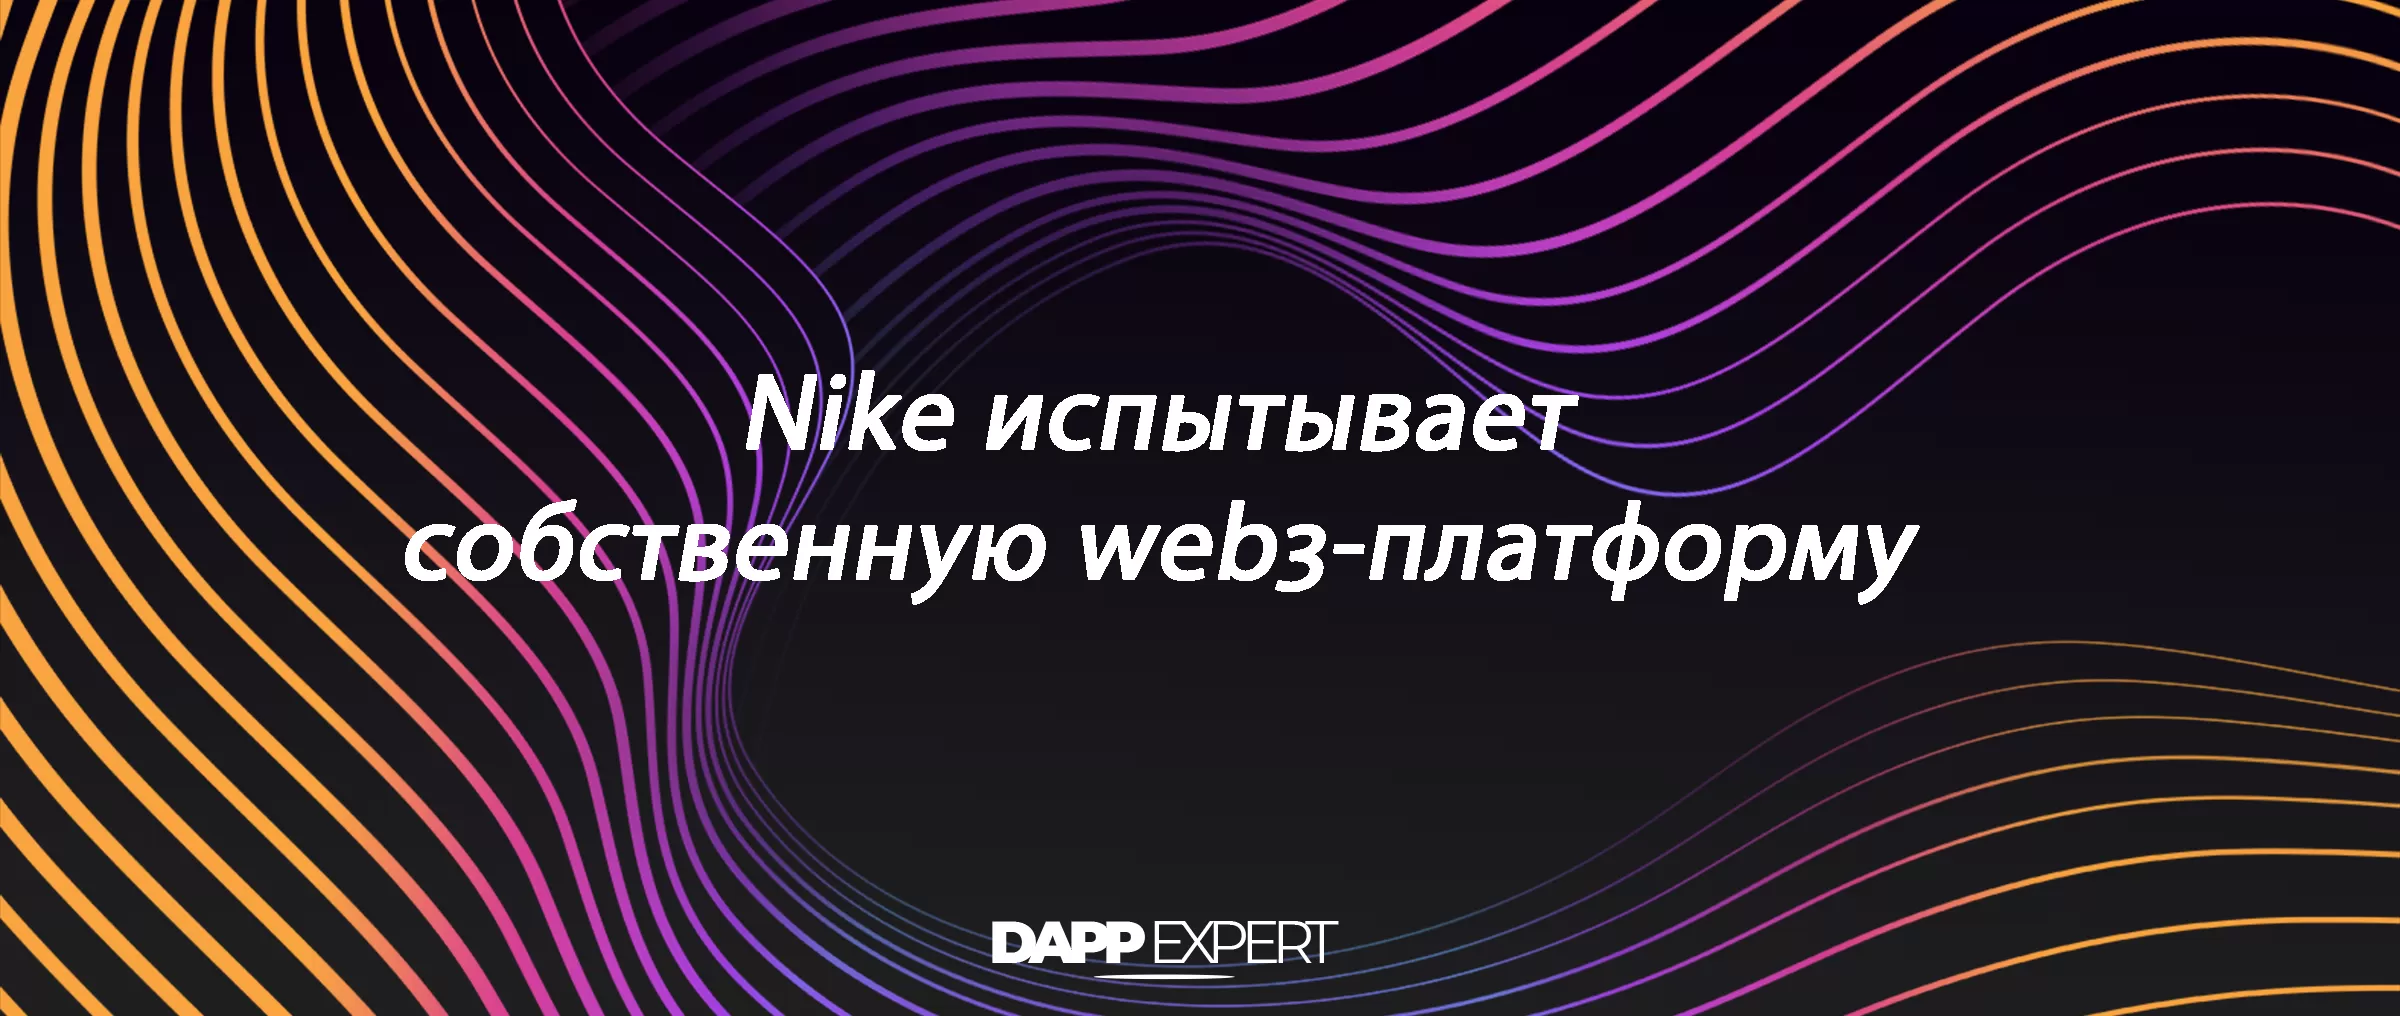 Nike испытывает собственную web3-платформу